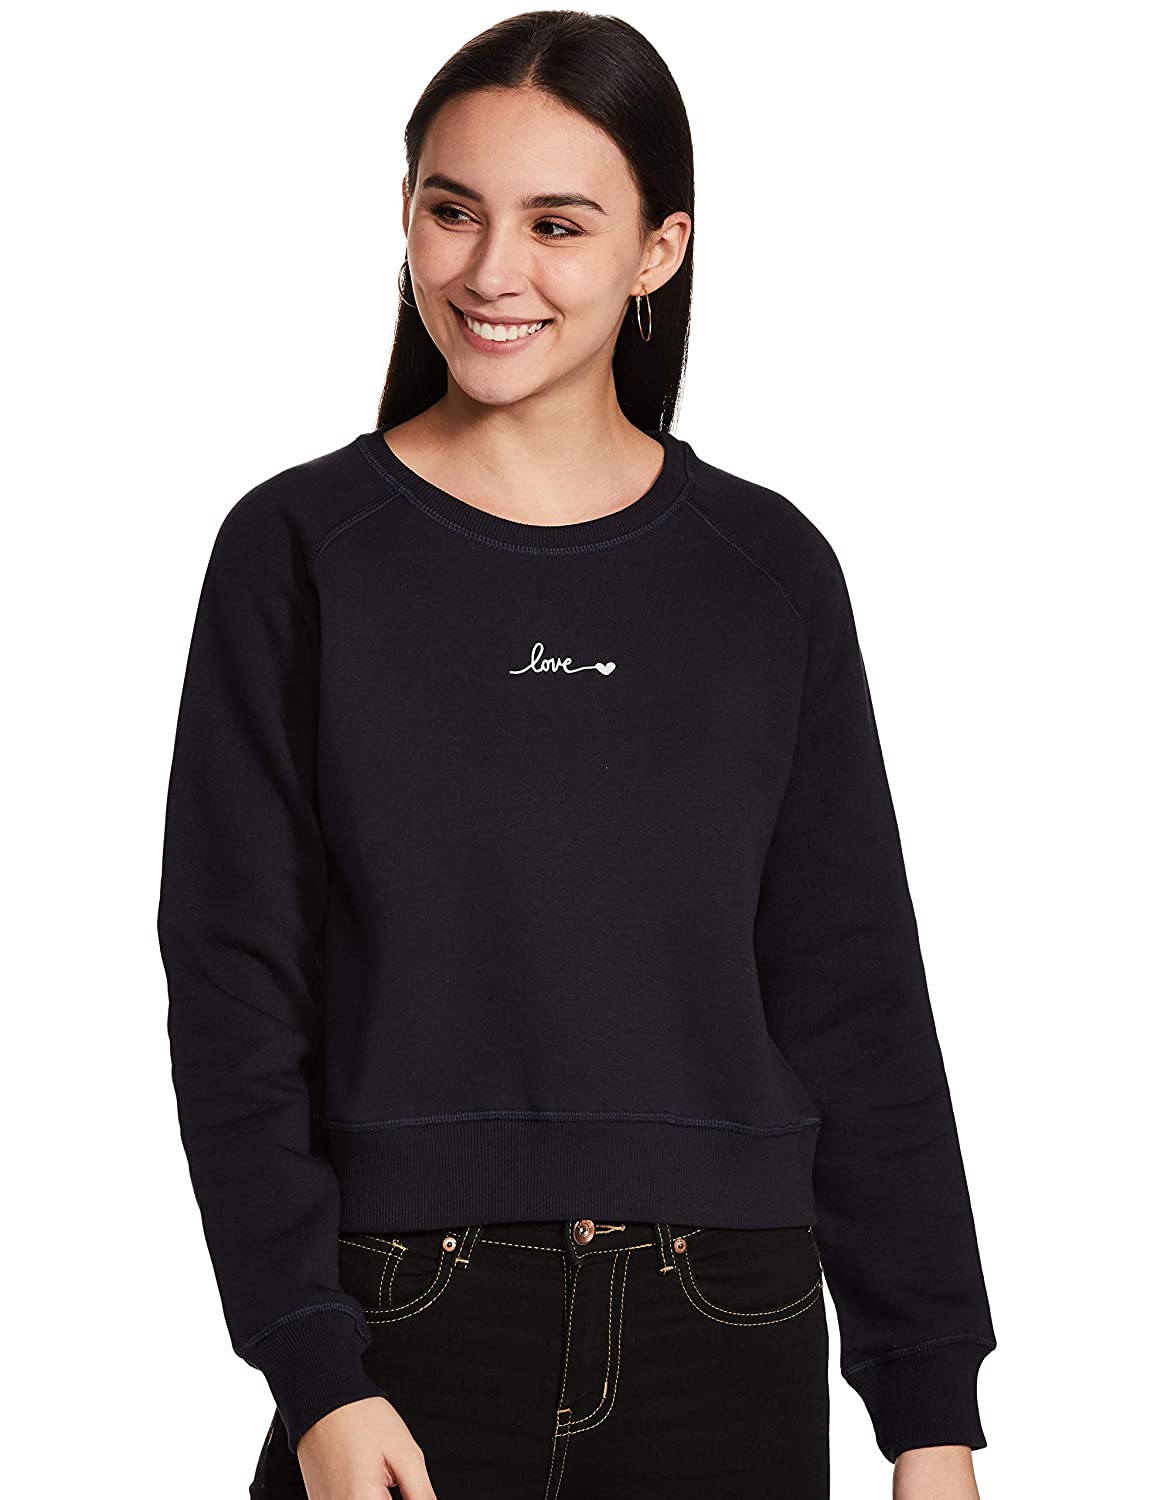 Model wearing a sweatshirt